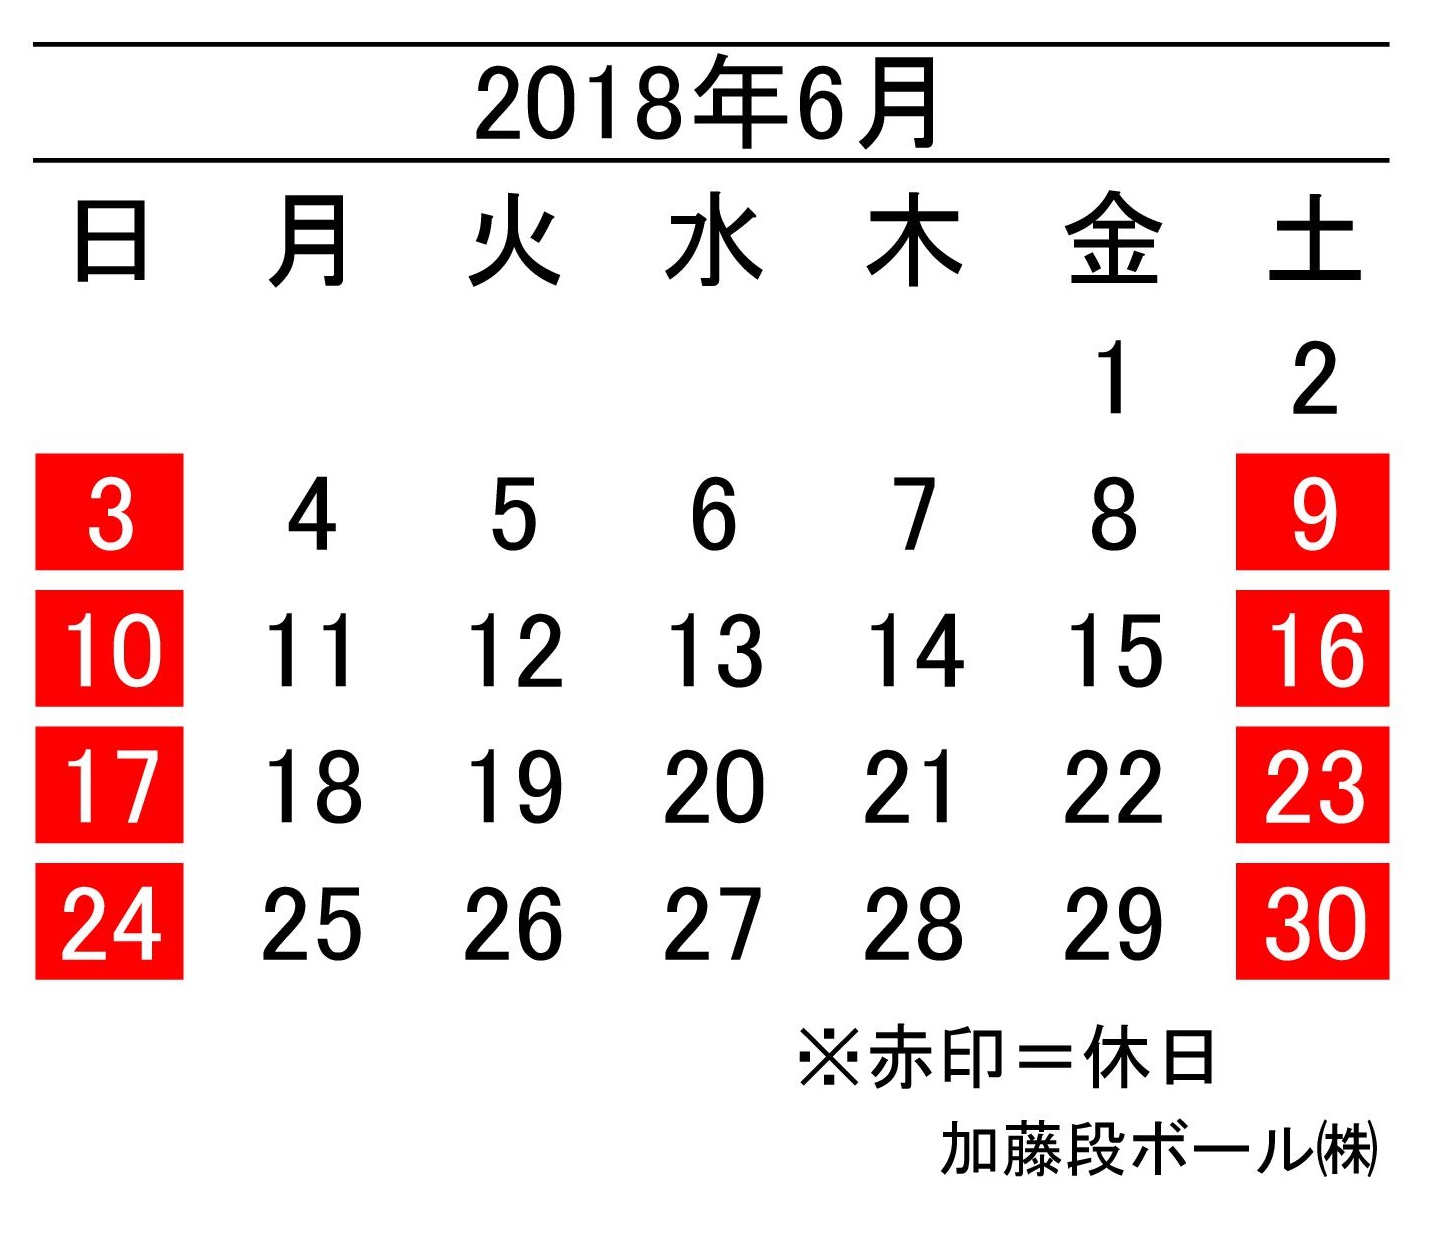 18年6月度営業日カレンダー 加藤段ボール株式会社 千葉 福島 神奈川を中心に段ボール製品 梱包資材の製造と販売